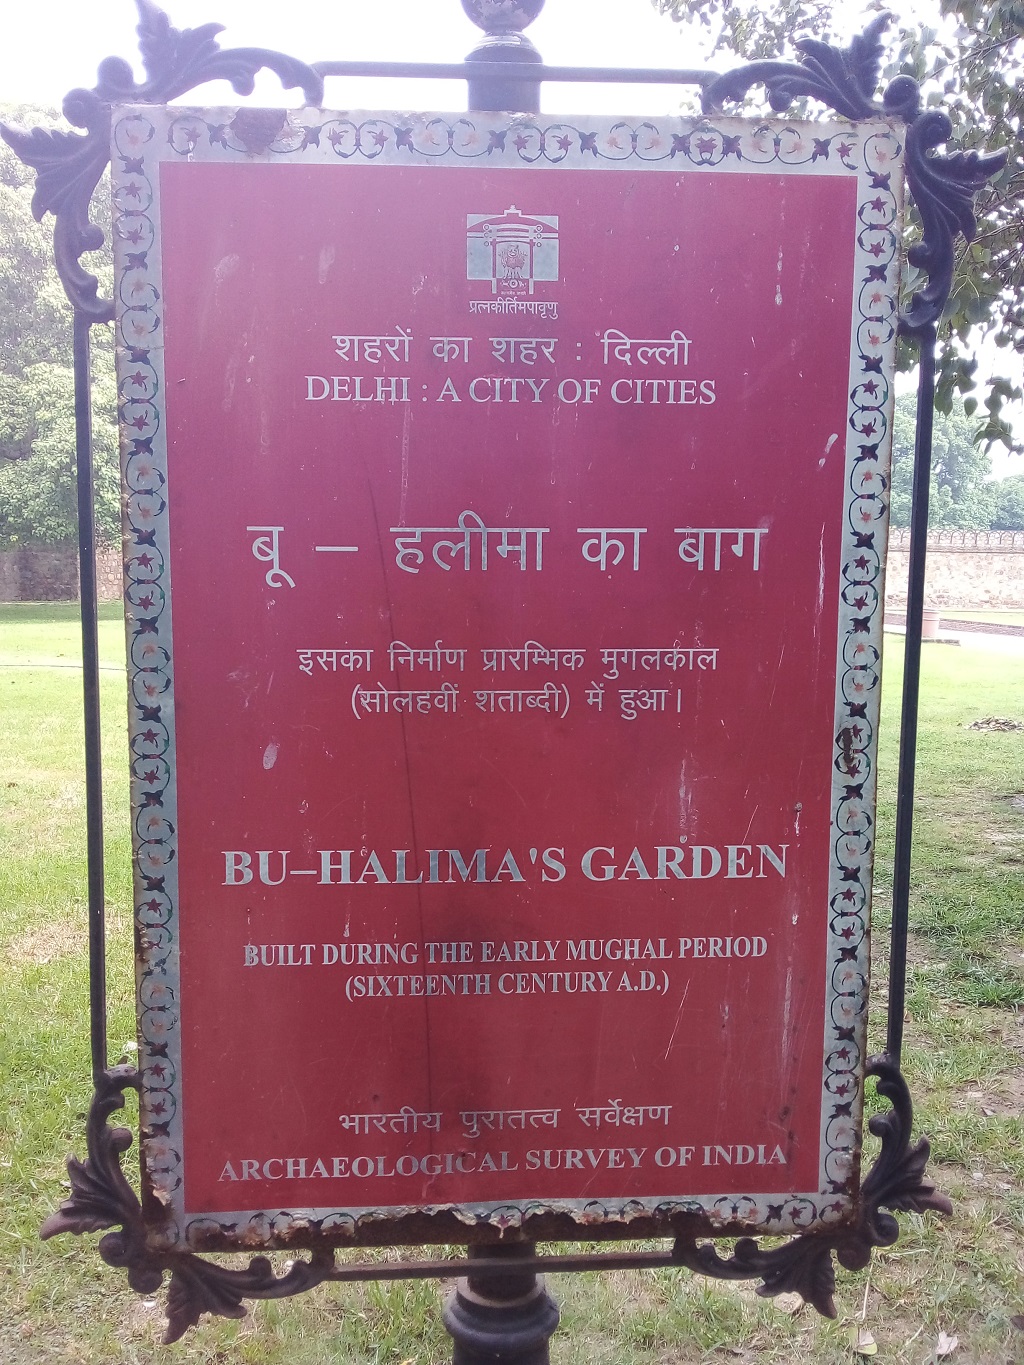 When was Bu-Halima’s Garden Built?